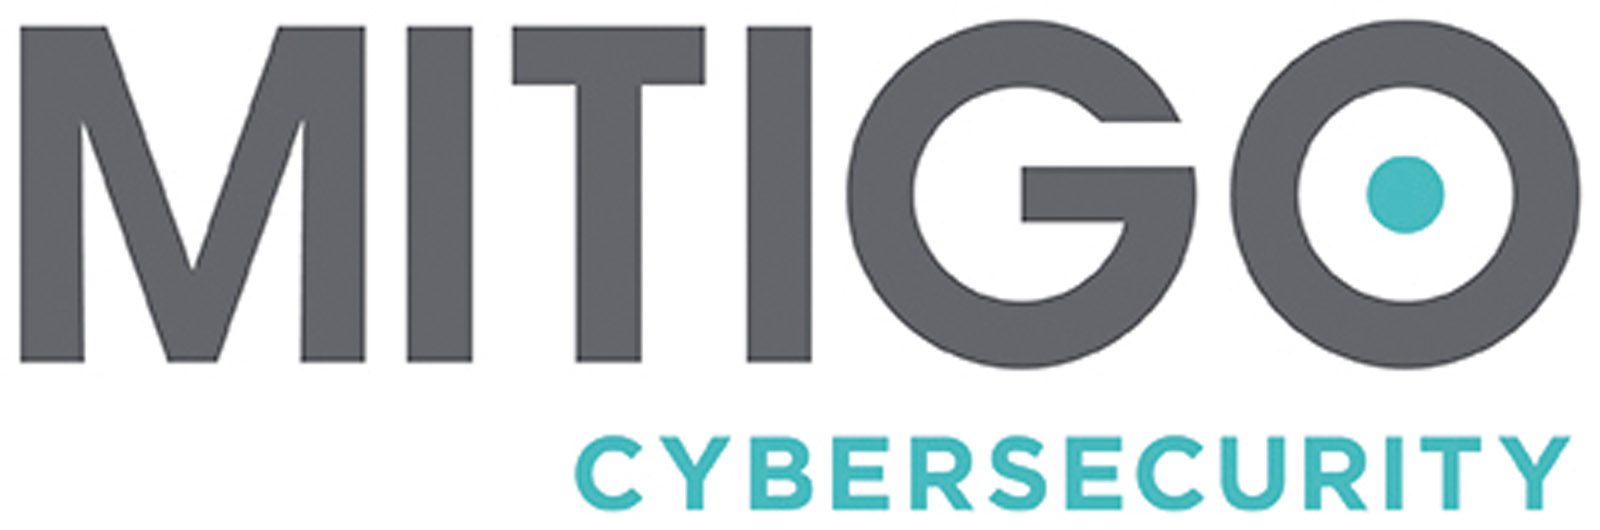 Mitigo Cybersecurity (logo)